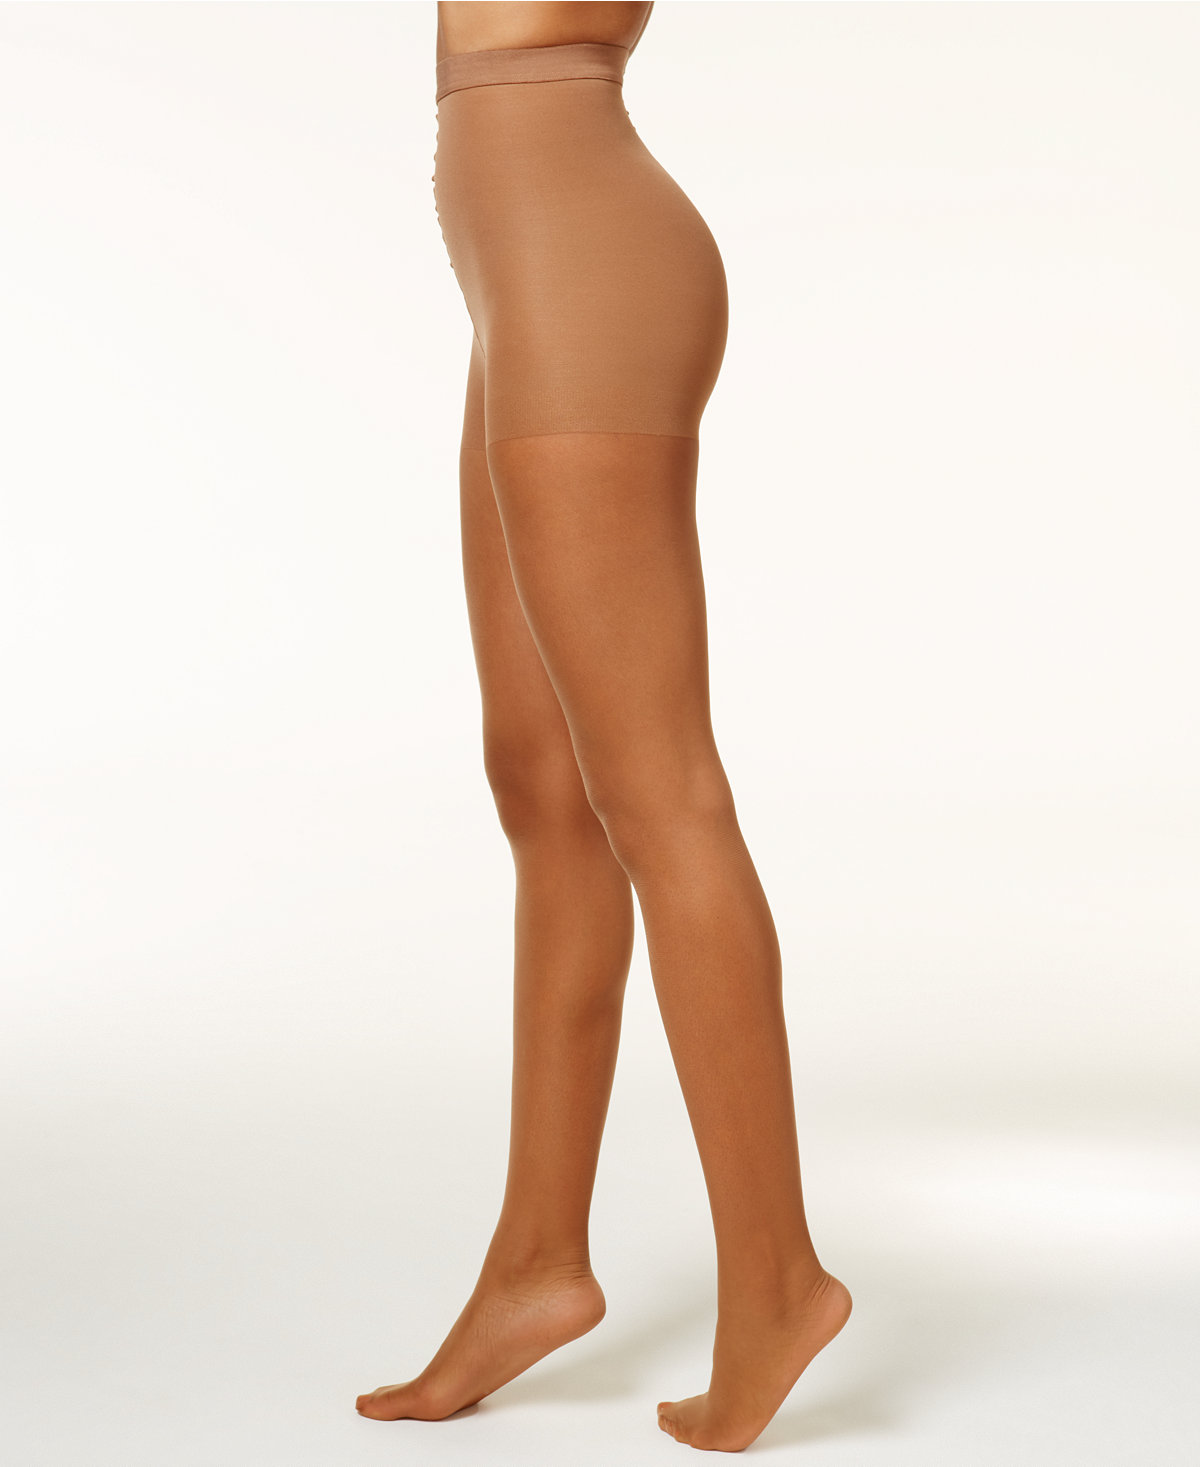 Tamara Calendar Girl Pantyhose “CONTROL TOP” with Feet – 241 Pantyhose 2  for 1 Pantyhose by Tamara Hosiery